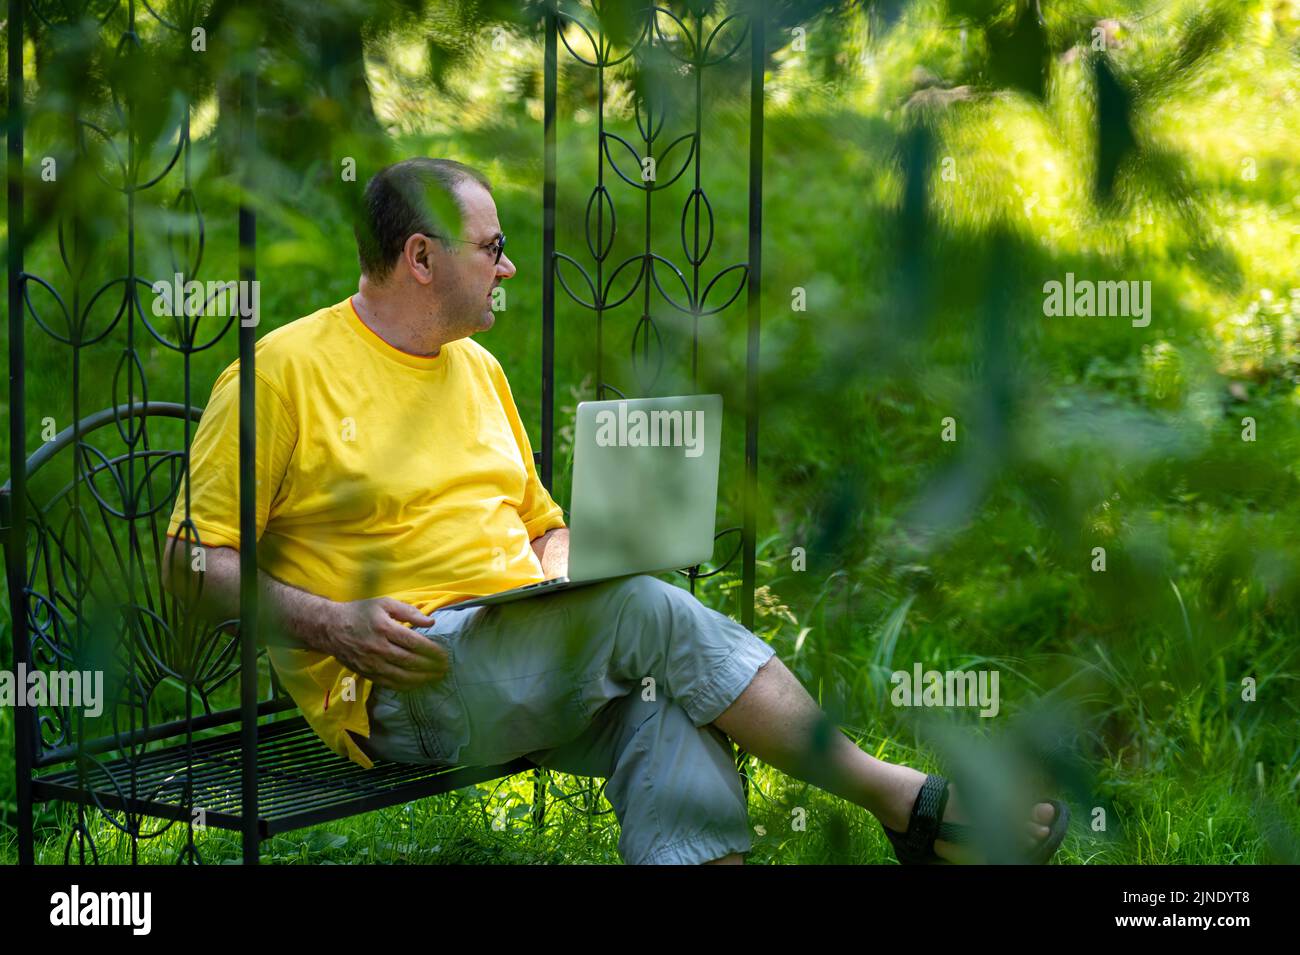 homme d'âge moyen avec ordinateur portable travaillant à l'extérieur dans le jardin, concept de bureau à domicile vert Banque D'Images